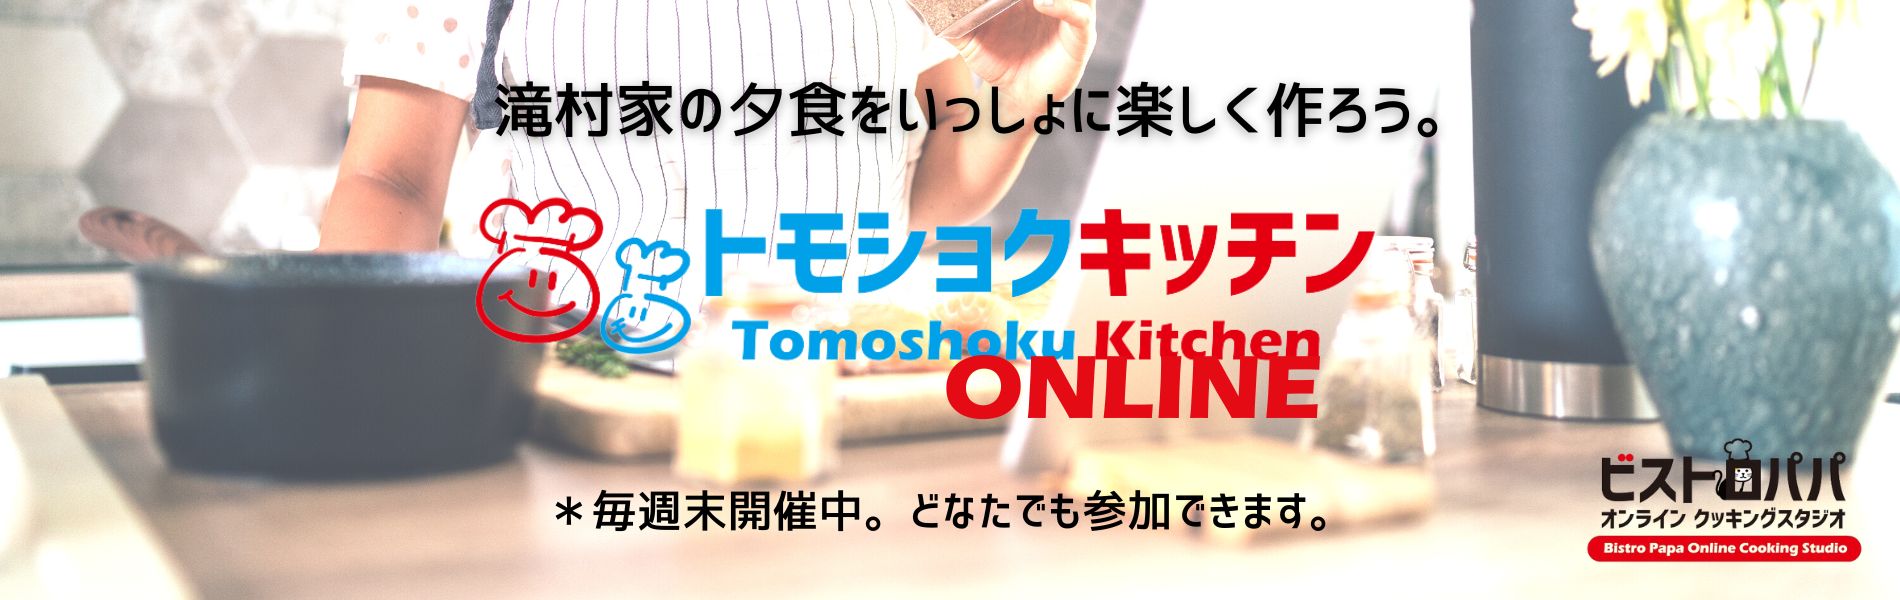 オンライン料理教室｜トモショクキッチンONLINE